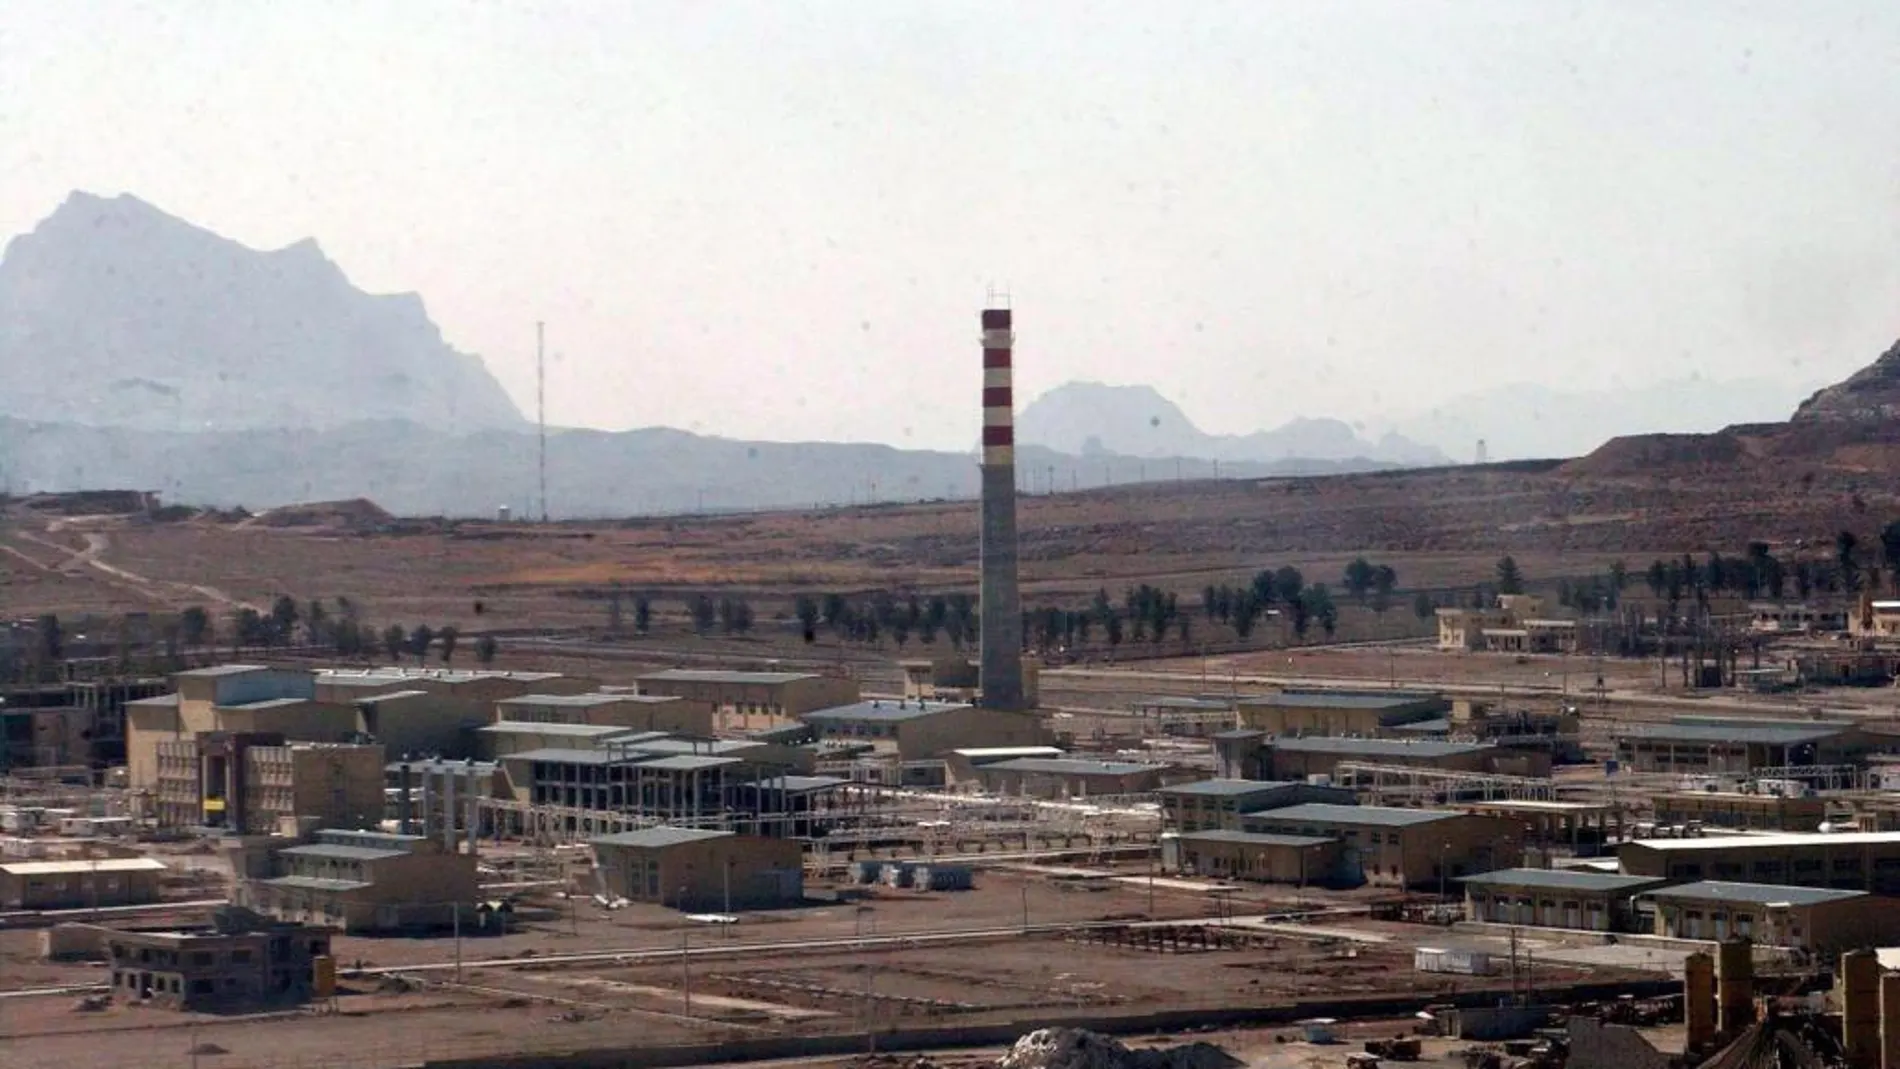 Foto de archivo con fecha del 30/03/05, donde muestra el complejo de enriquecimiento de uranio en el pueblo de Ispahán (Irán).